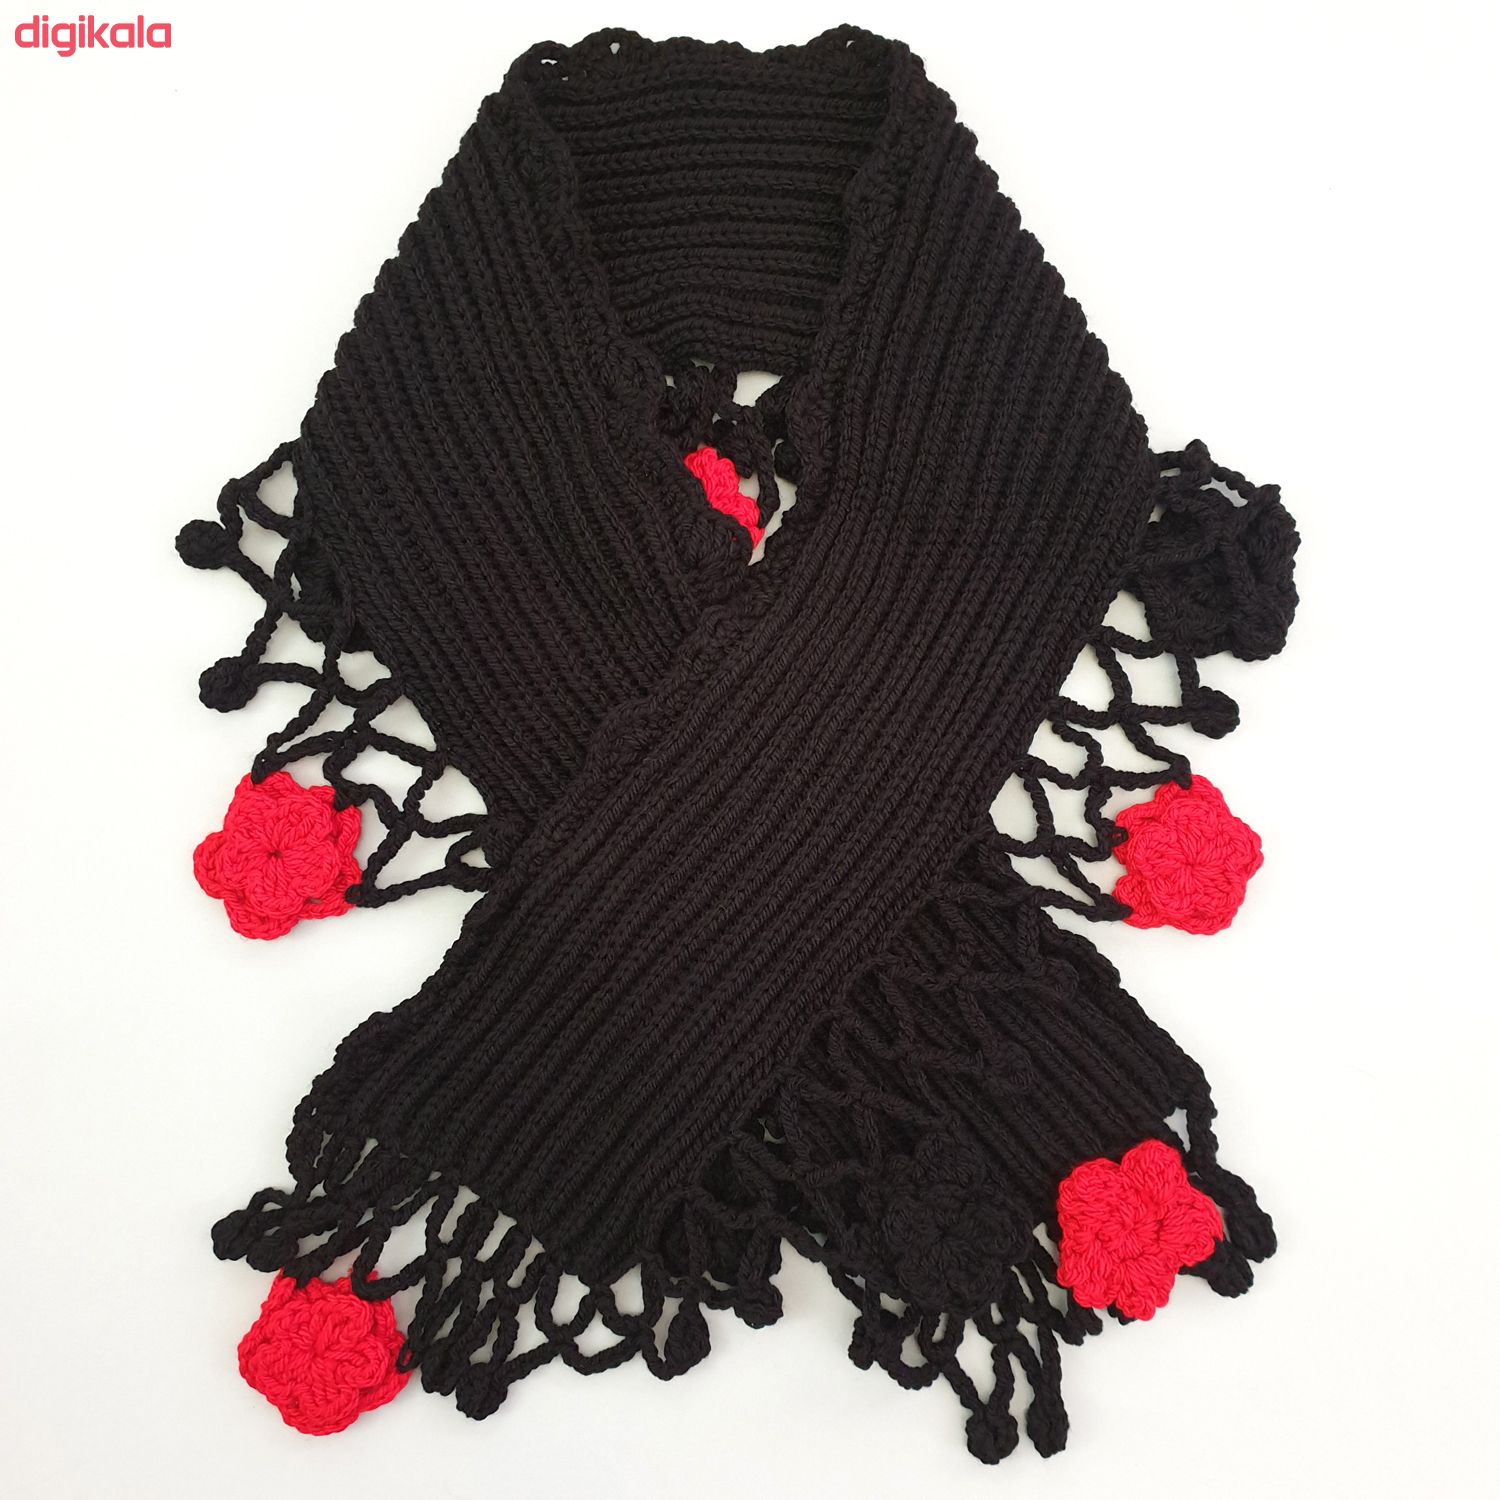  خرید اینترنتی با تخفیف ویژه شال گردن بافتنی زنانه مدل مرجان کد SHL09-BKRD